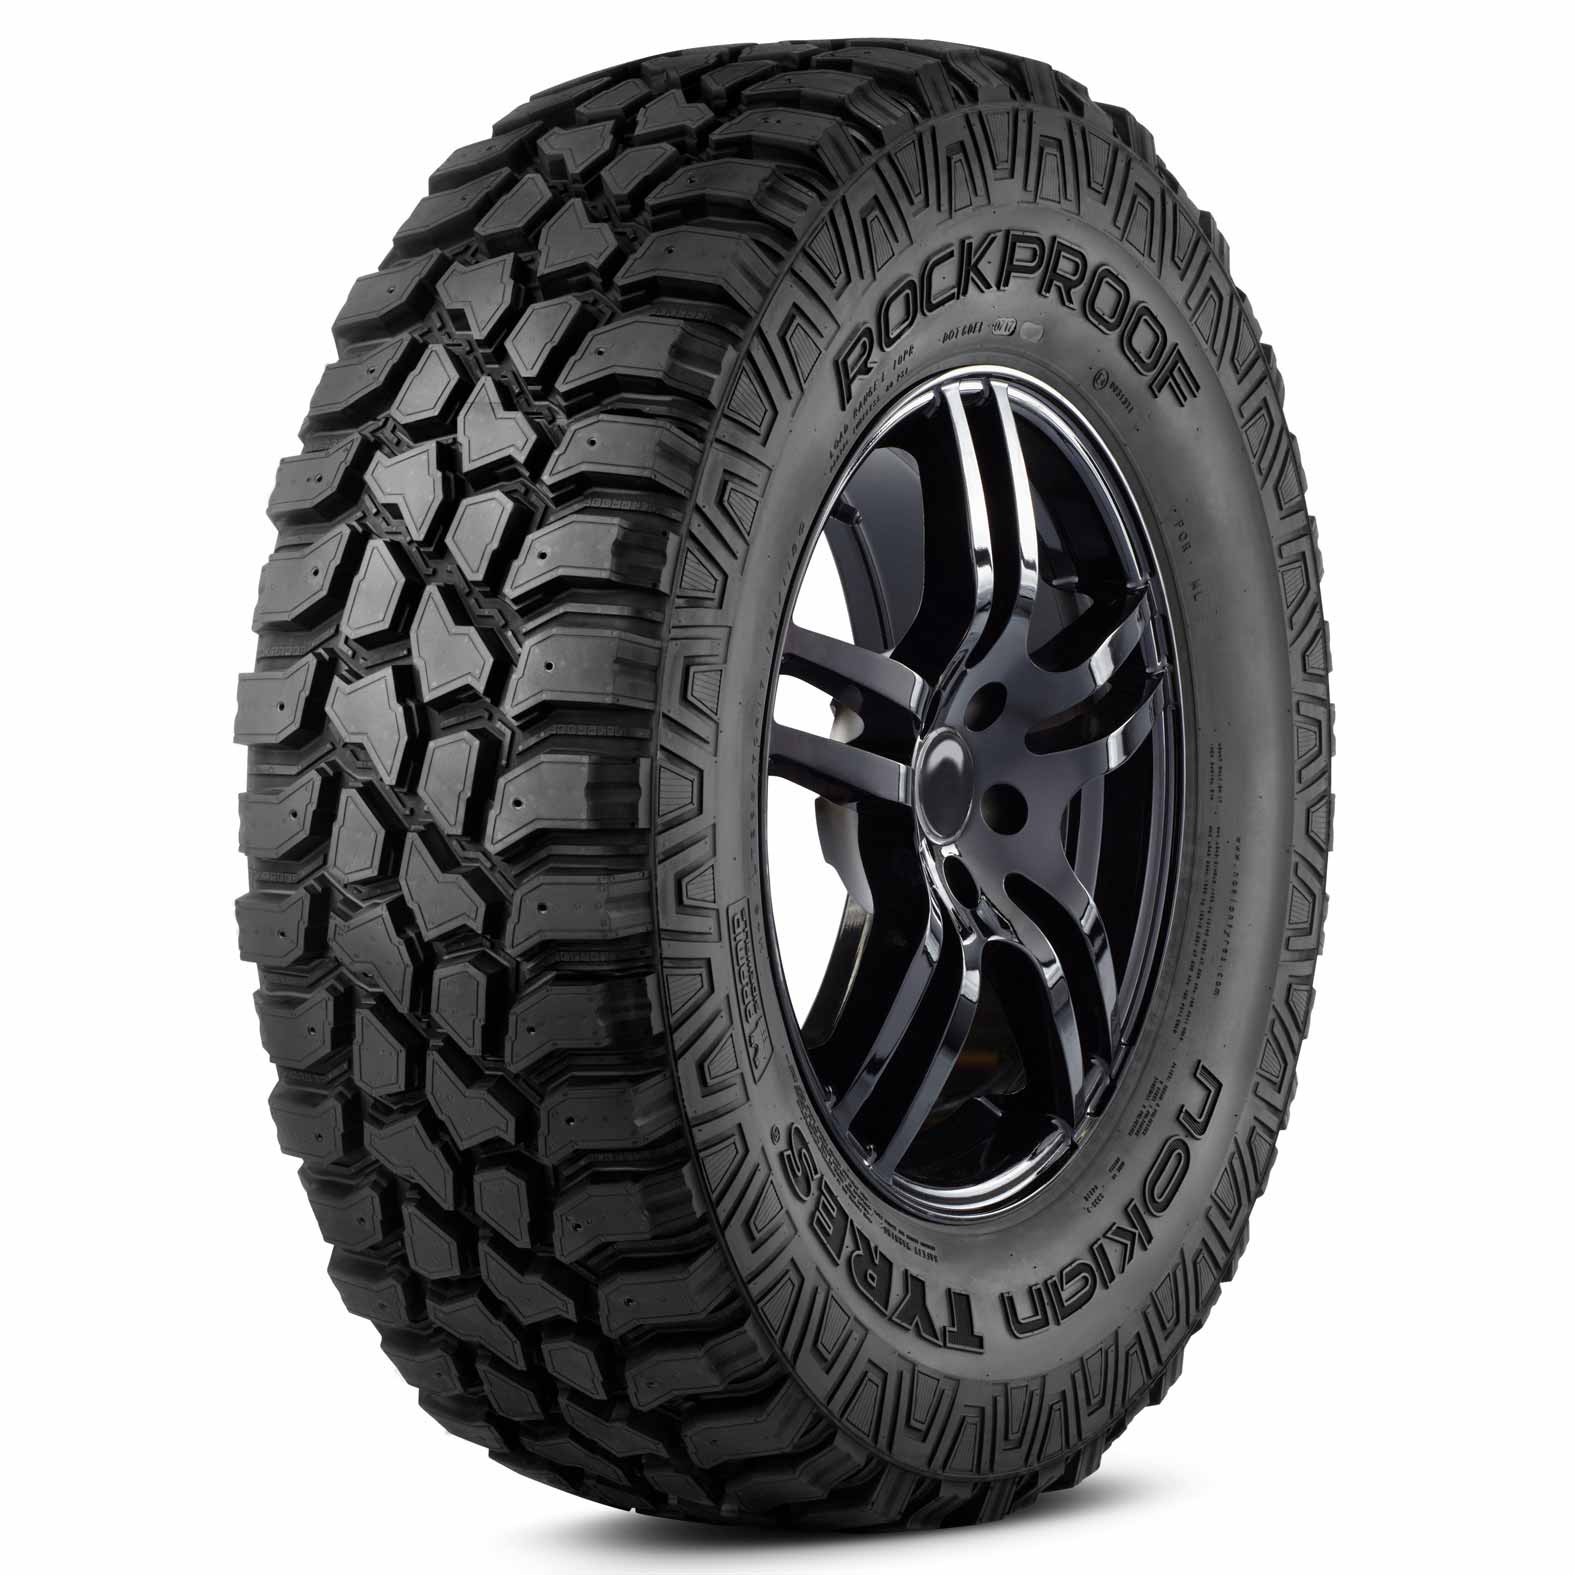 nokian-rockproof-tires